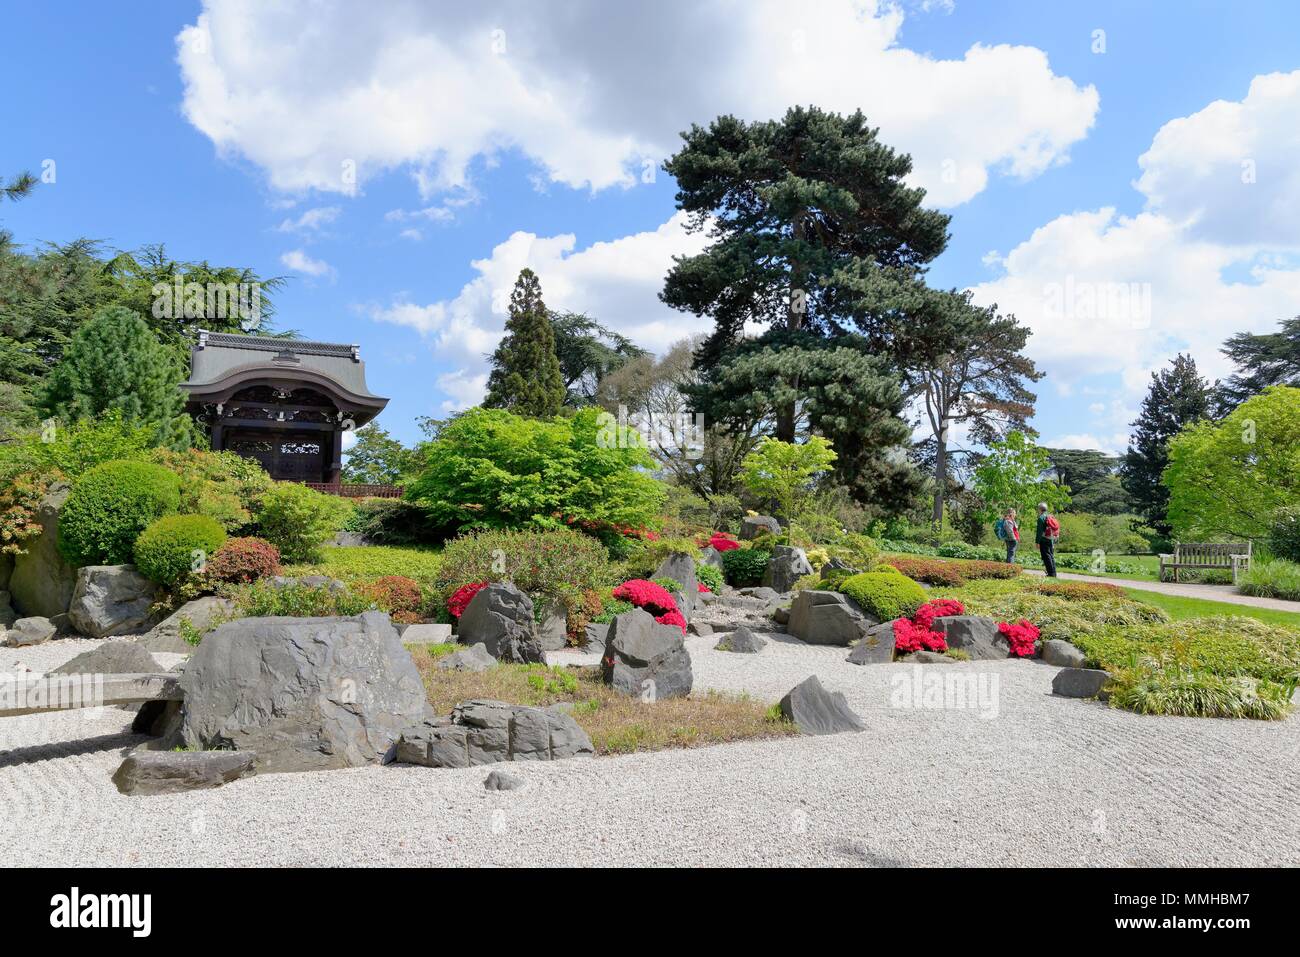 Le Jardin Japonais dans les Royal Botanic Gardens, Kew Grand Londres Angleterre Royaume-uni Banque D'Images